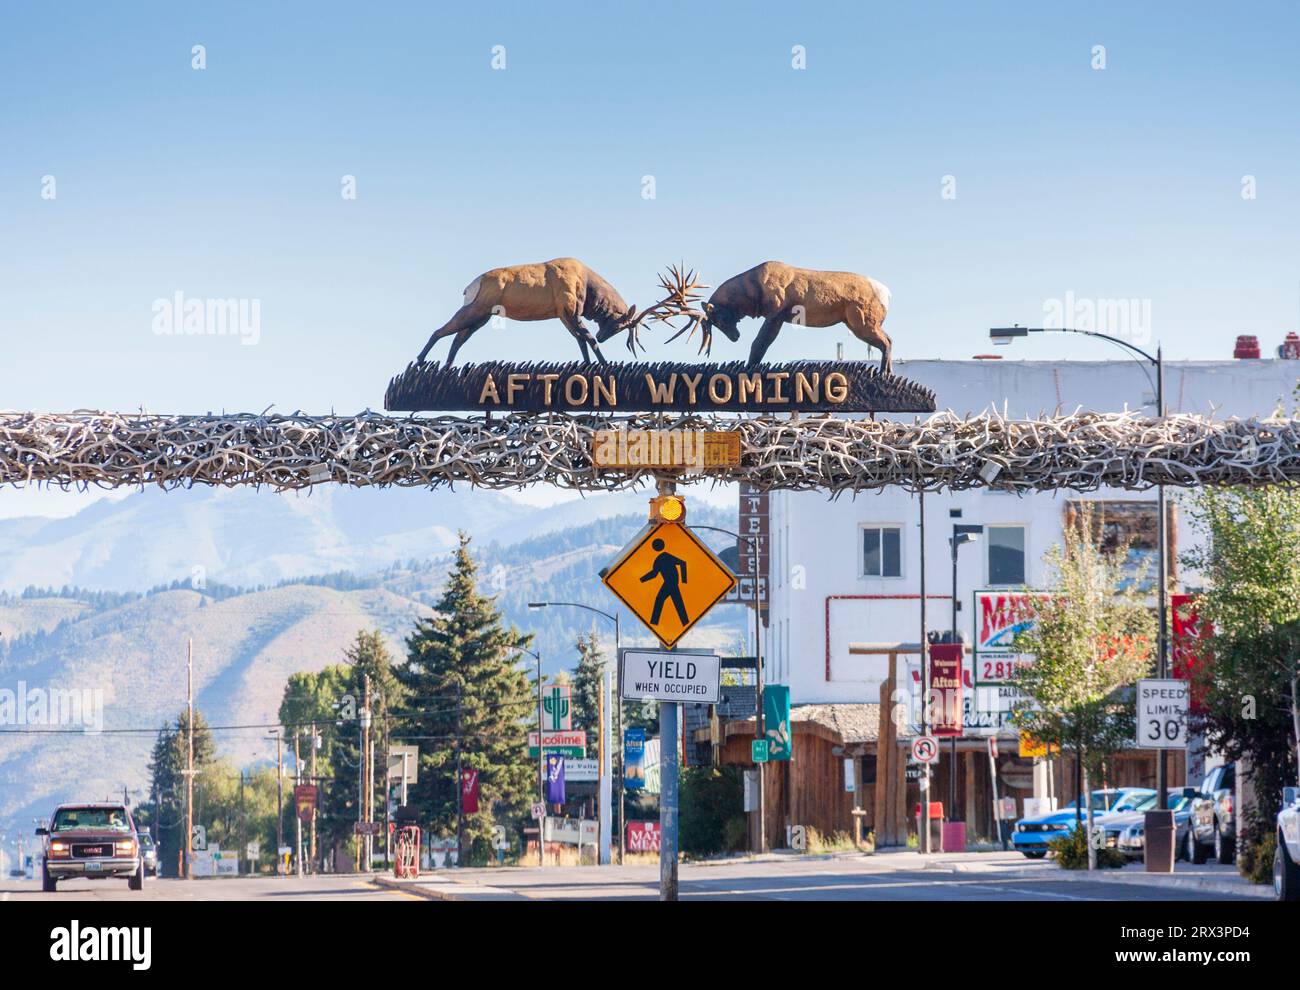 Willkommen in Afton, Wyoming, Schild auf dem Bogen aus Elchhörnern. Stockfoto